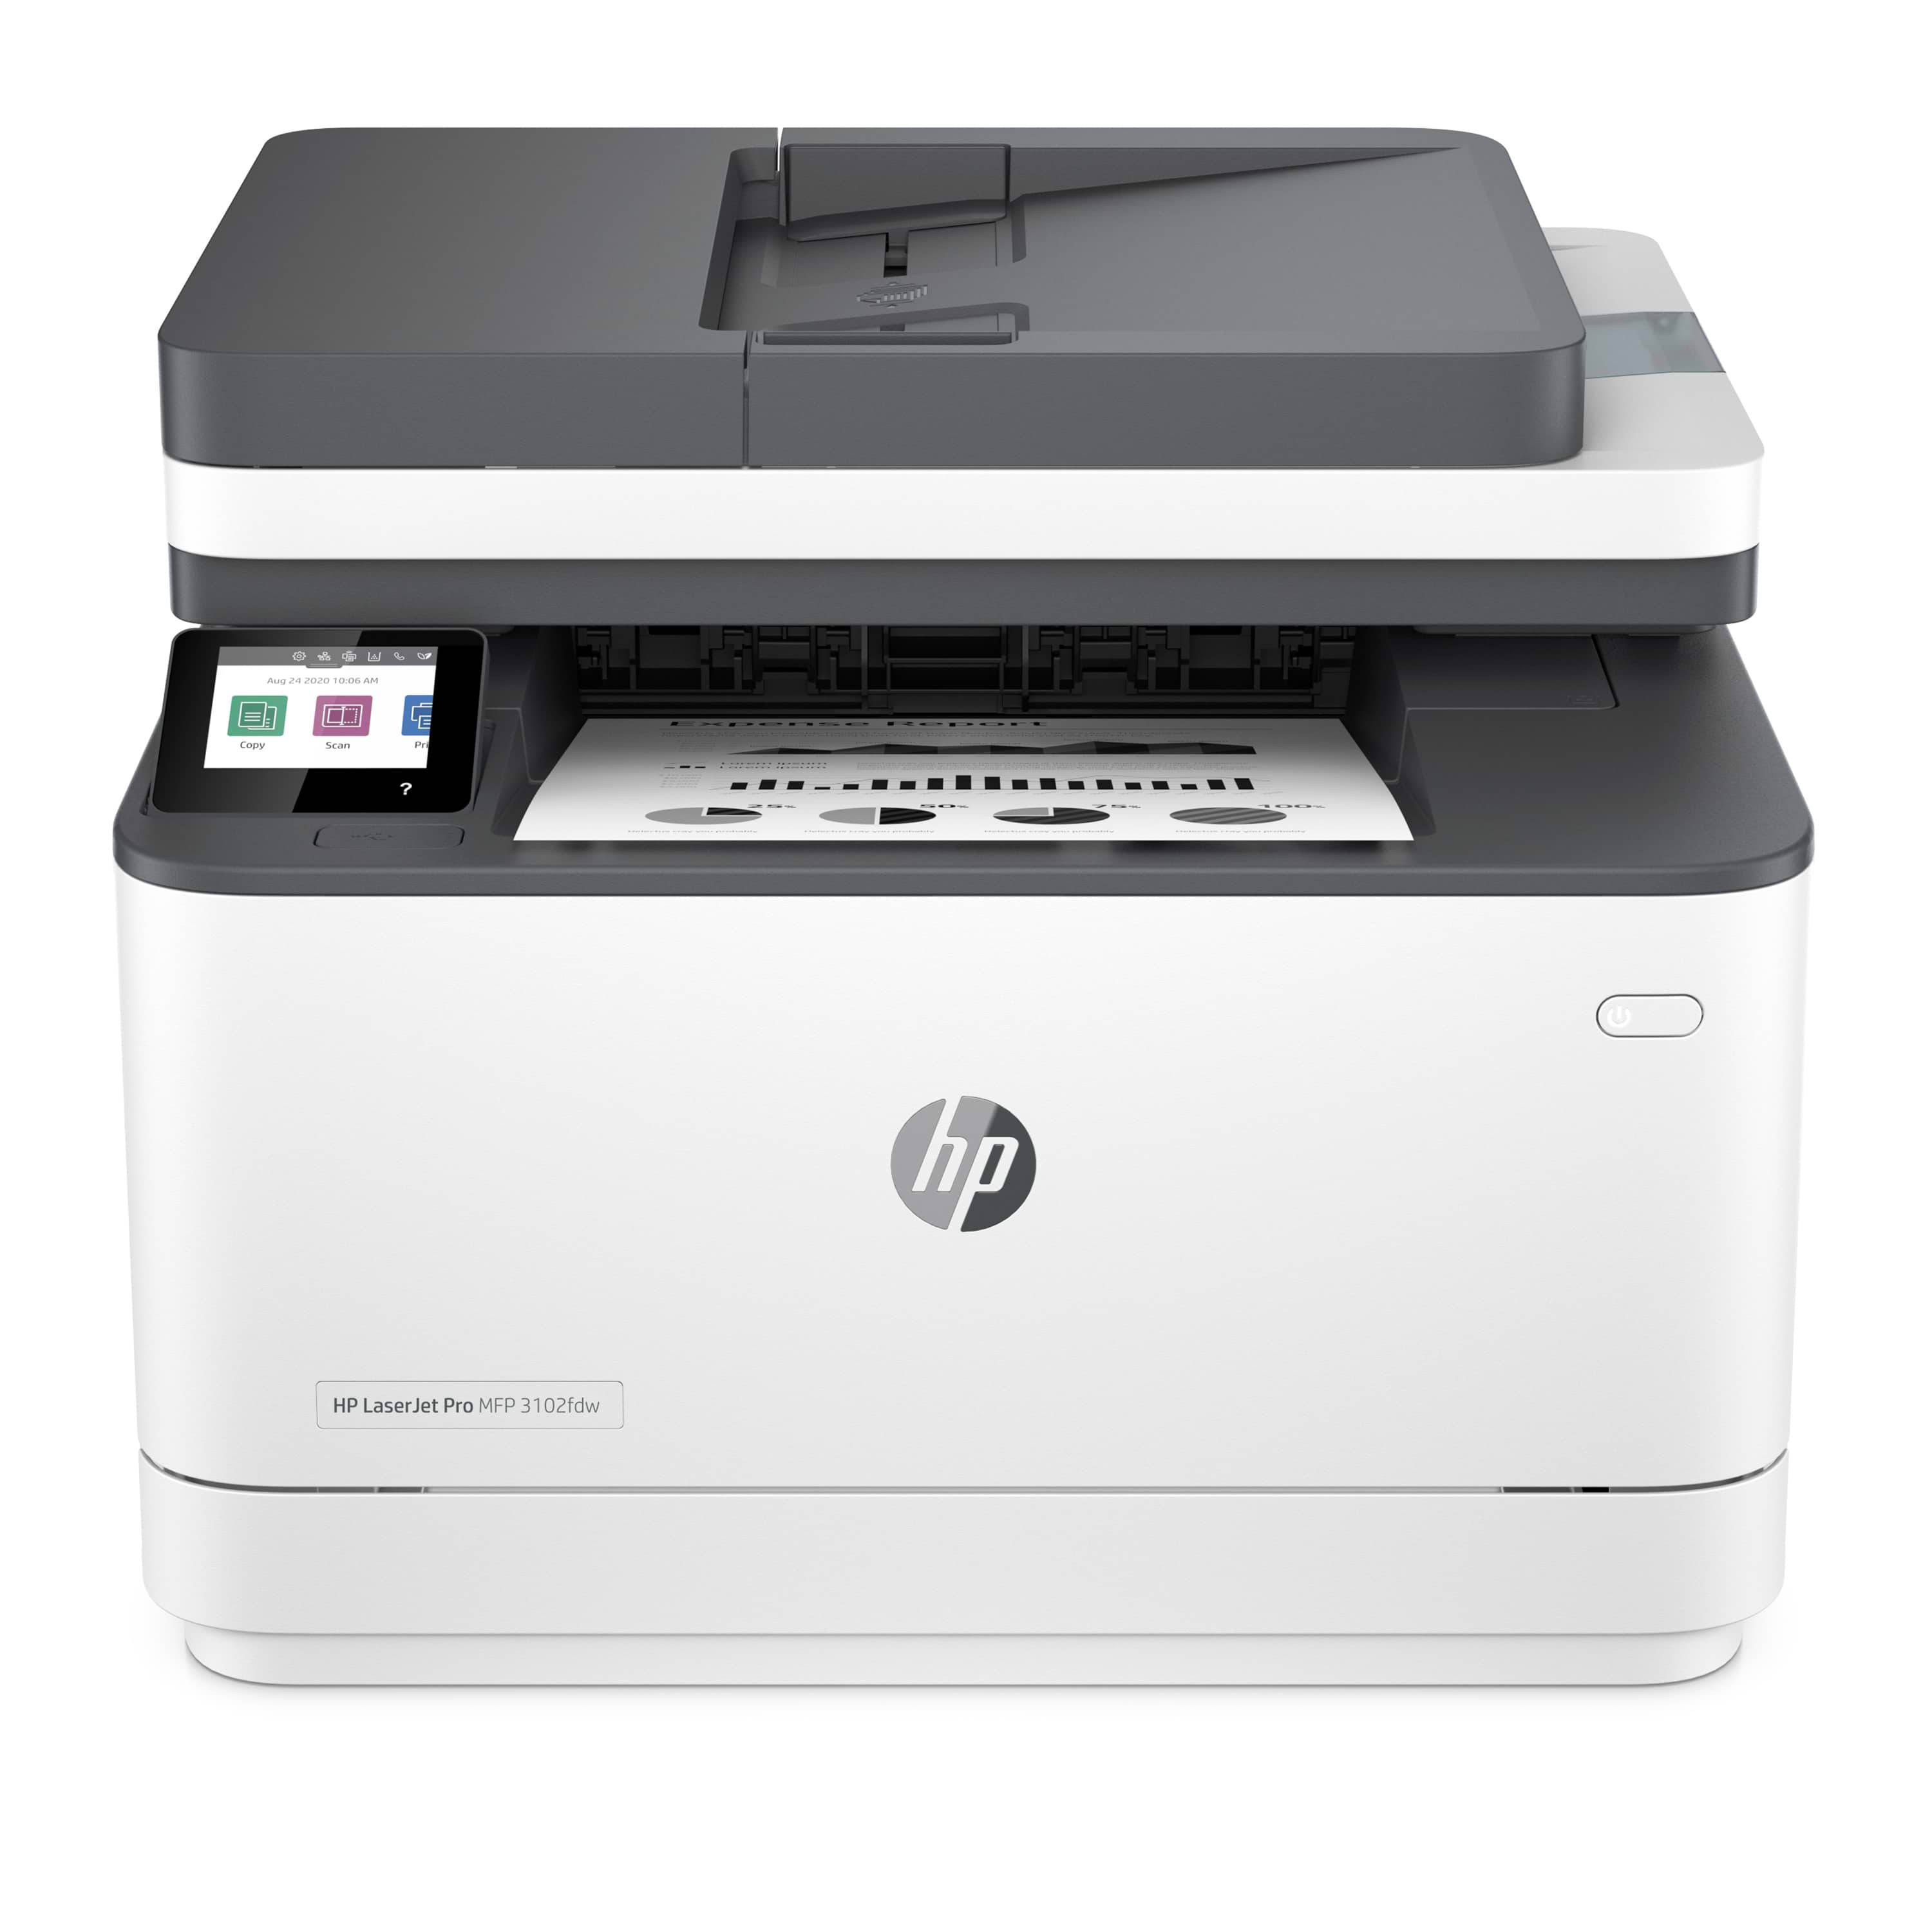 טכנו HP LaserJet Pro MFP 3102fdw Printer מדפסת לייזר